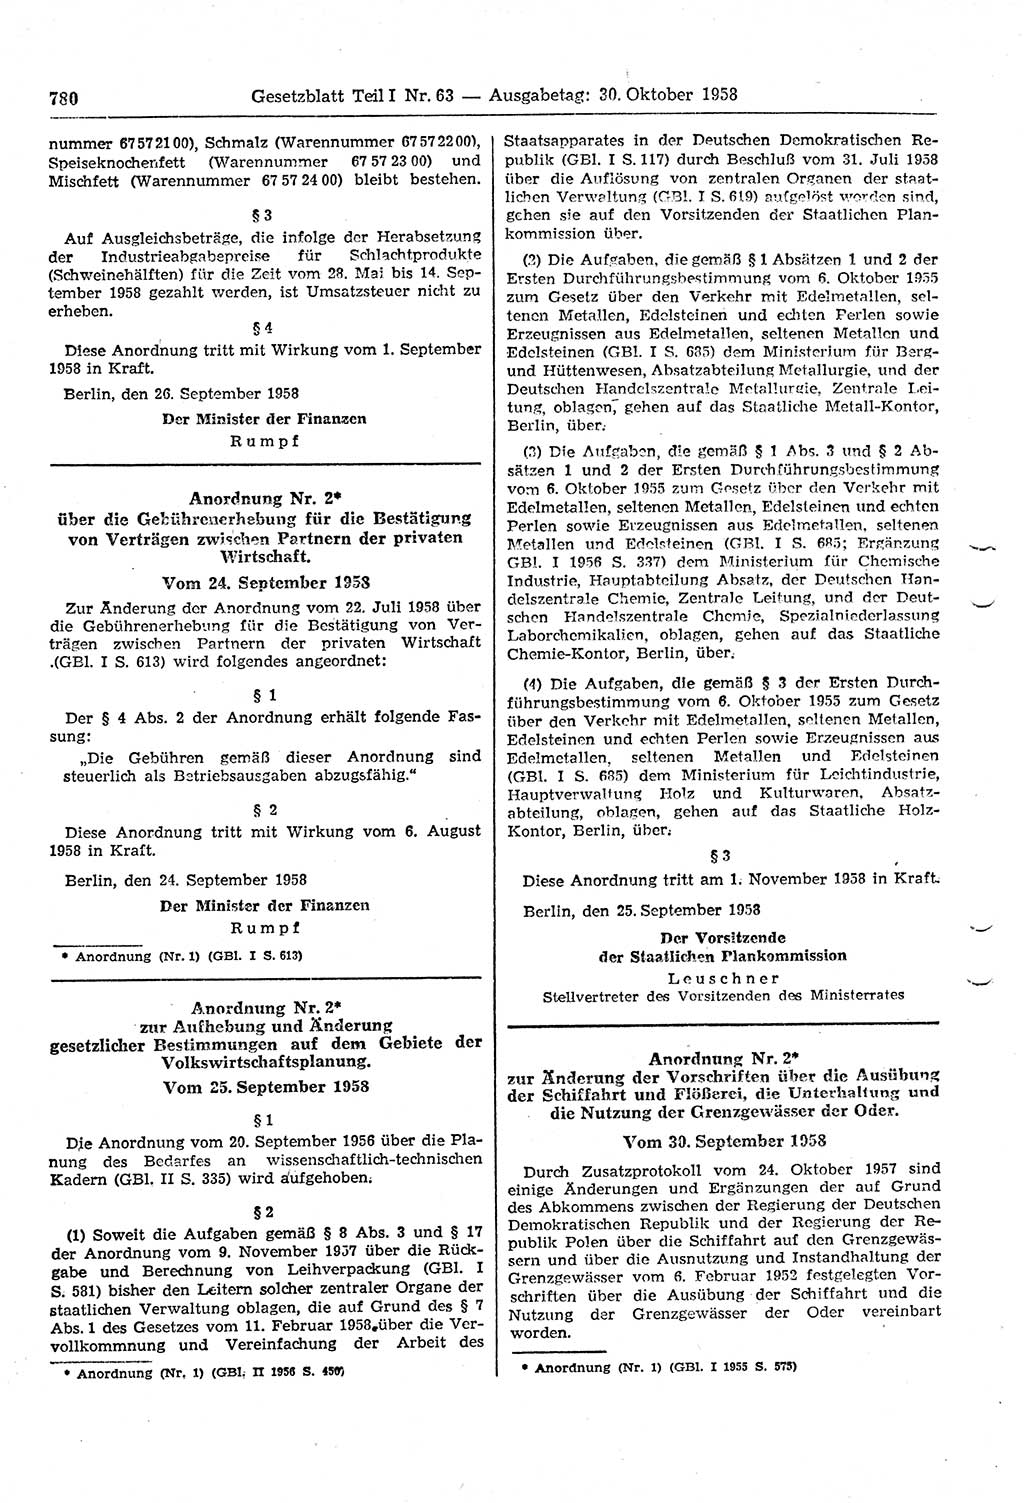 Gesetzblatt (GBl.) der Deutschen Demokratischen Republik (DDR) Teil Ⅰ 1958, Seite 780 (GBl. DDR Ⅰ 1958, S. 780)